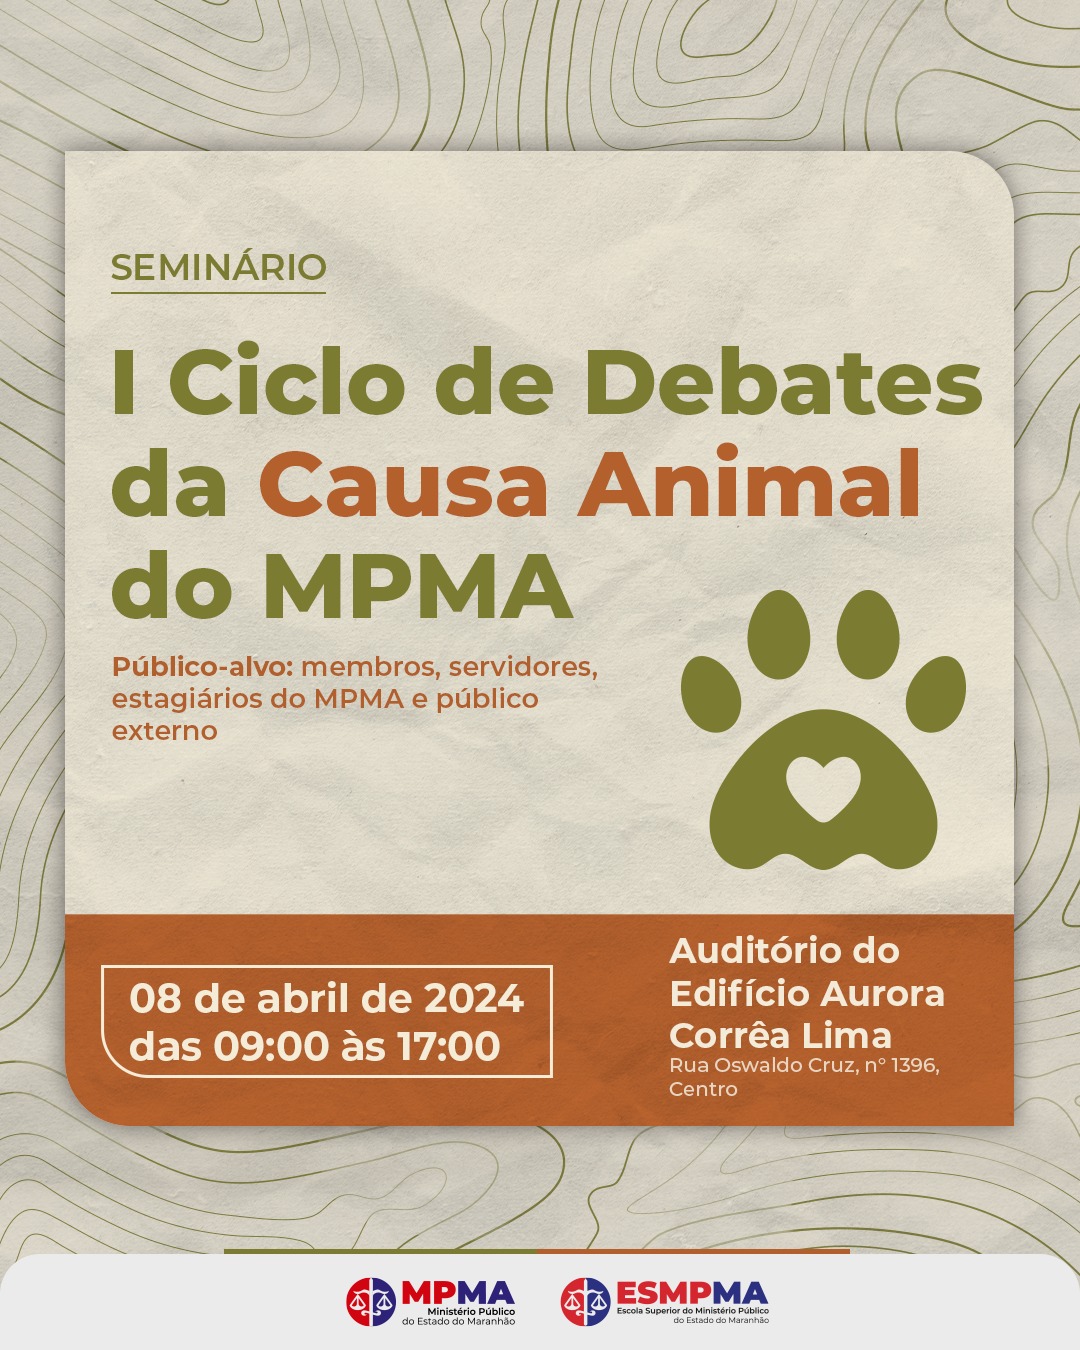 I Ciclo de Debates da Causa Animal do MPMA